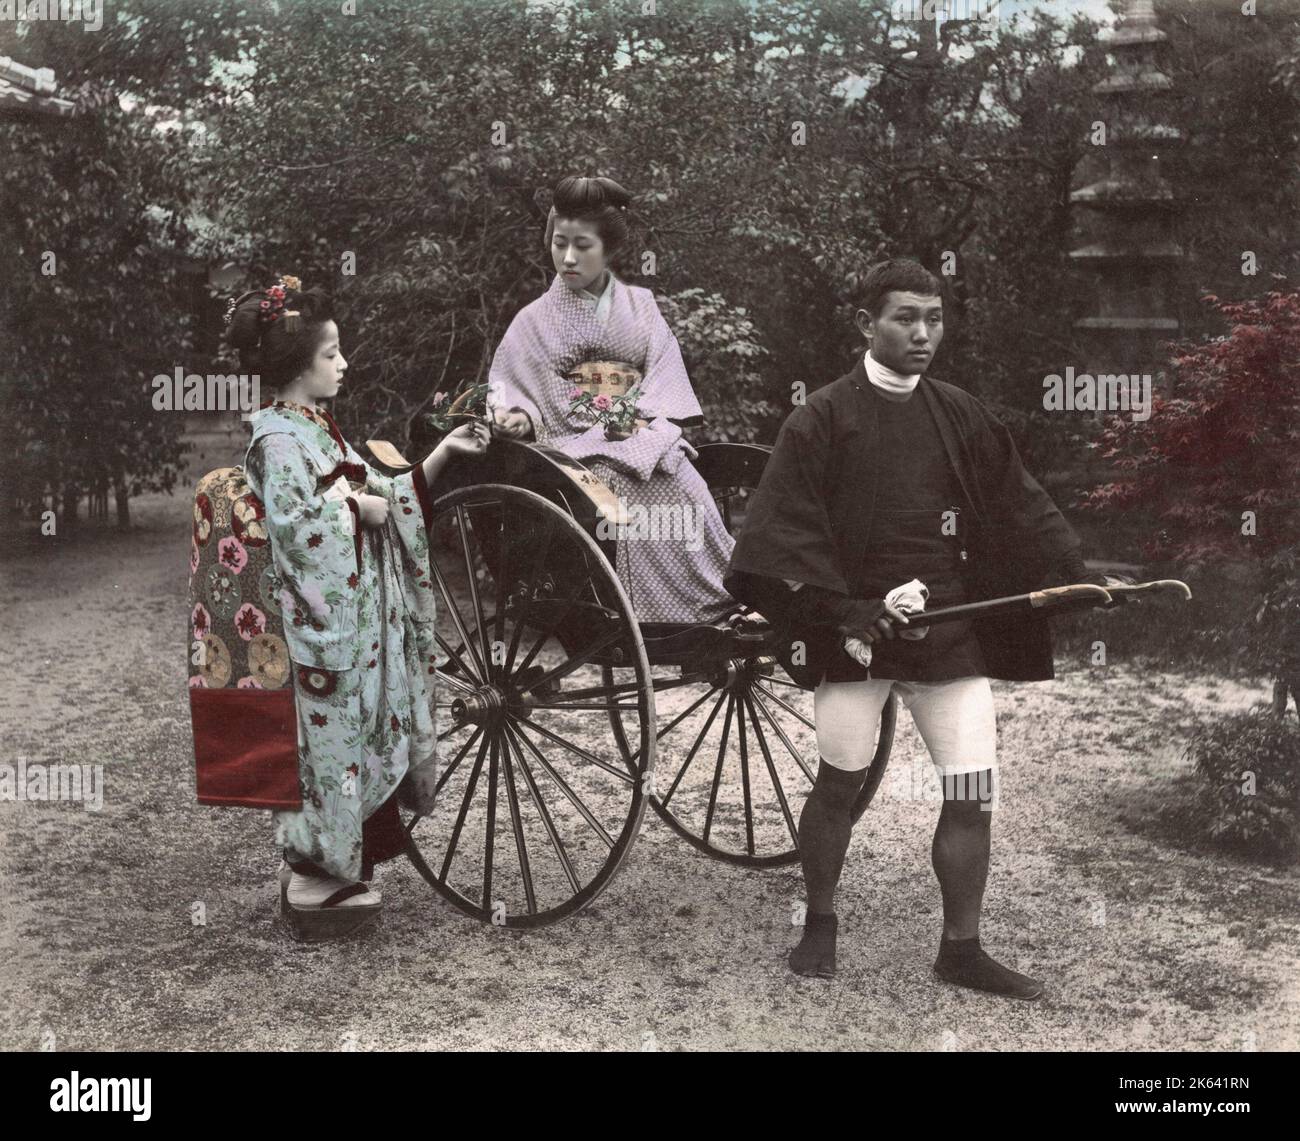 Giovane donna che viene tirata in un risciò, jinrikisha, Giappone. Vintage 19th ° secolo fotografia. Foto Stock